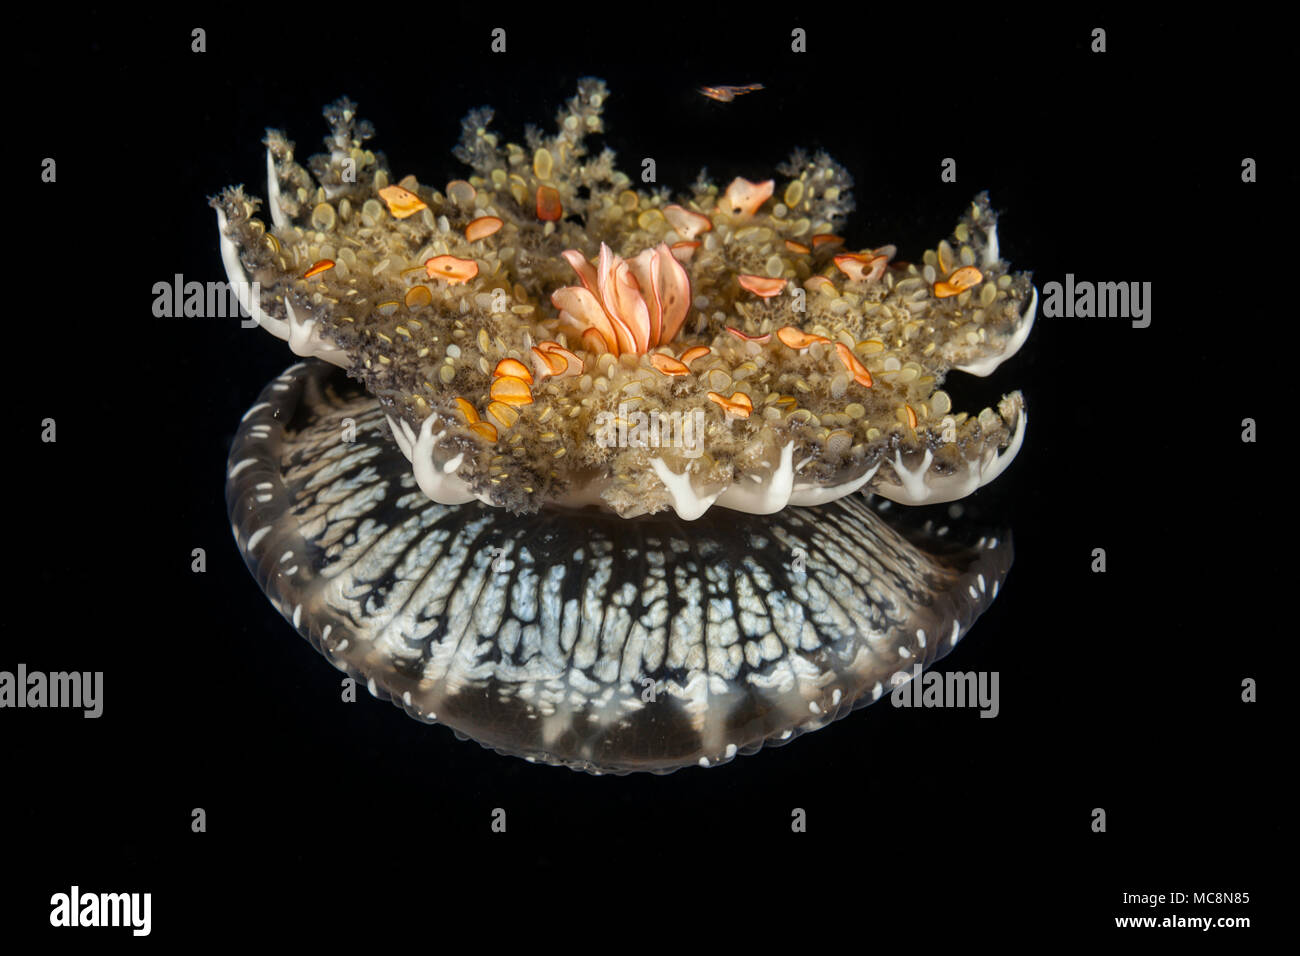 Nachahmung ist es enger Verwandter der Seeanemonen, diese upsidedown Qualle, Cassiopea medusae, wird häufig gesehen, Ausruhen, Glocke unten, Tentakeln, die auf Stockfoto